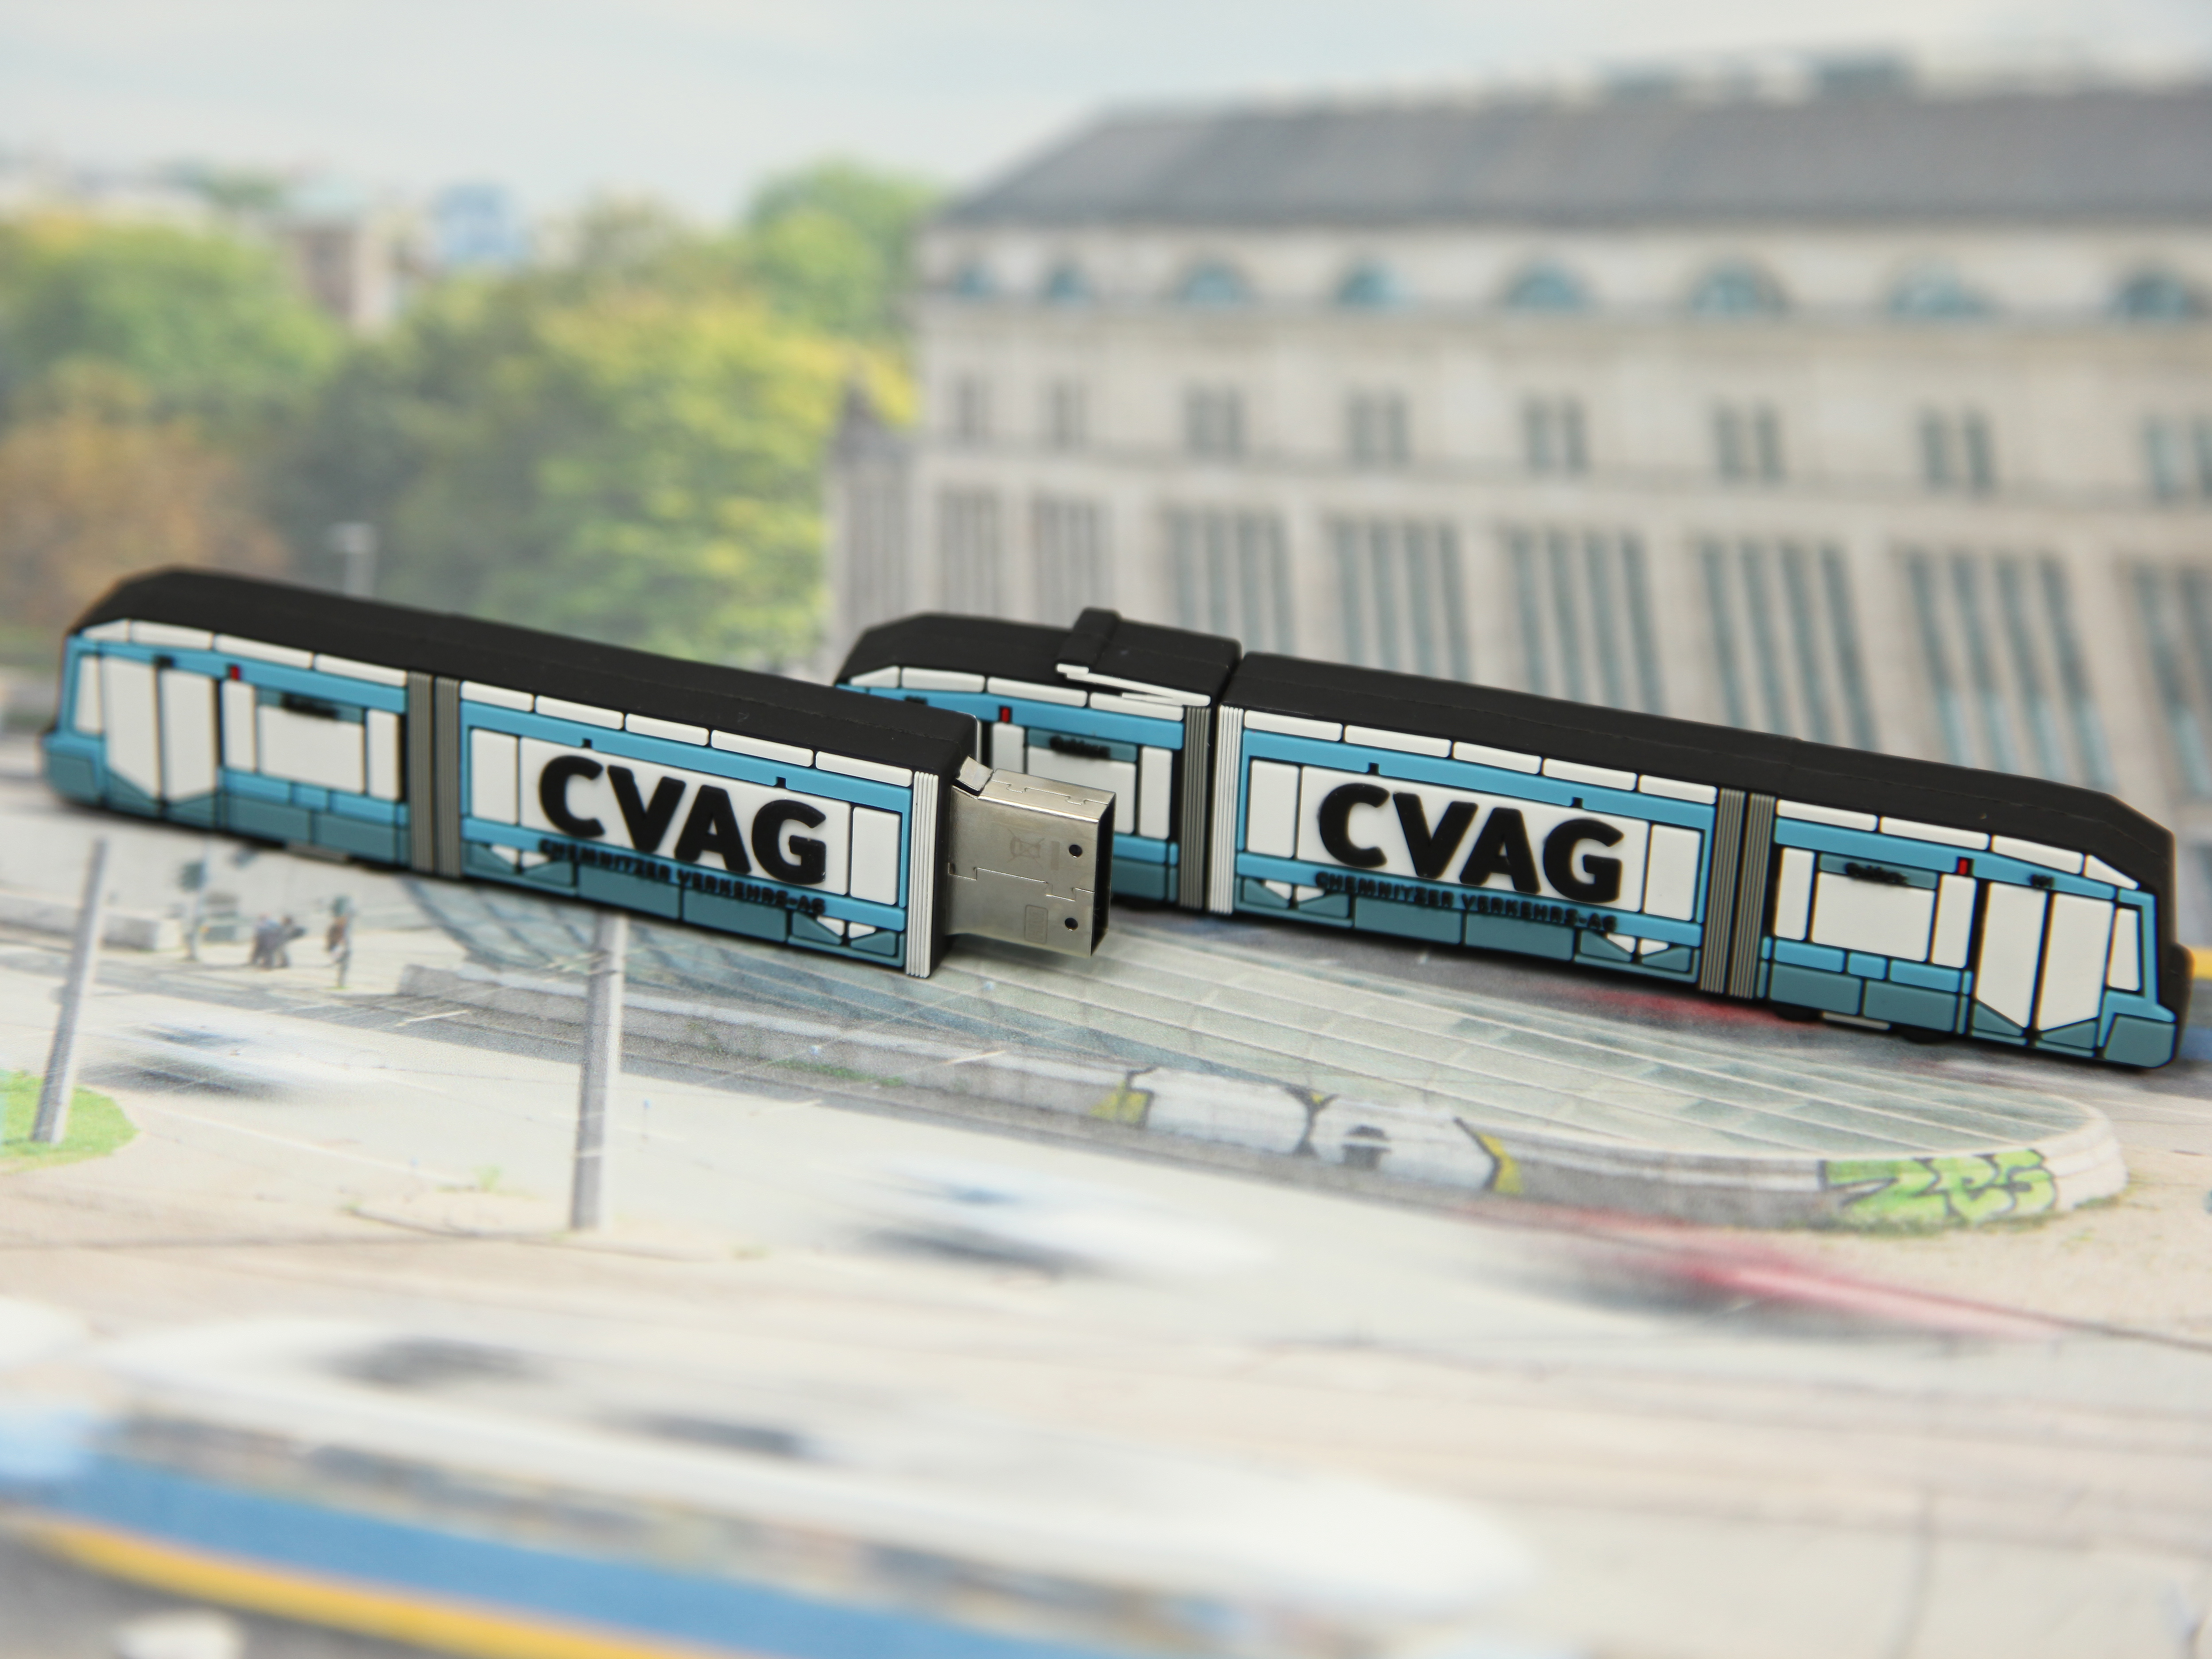 CVAG Strassenbahn Chemnitz USB Stick